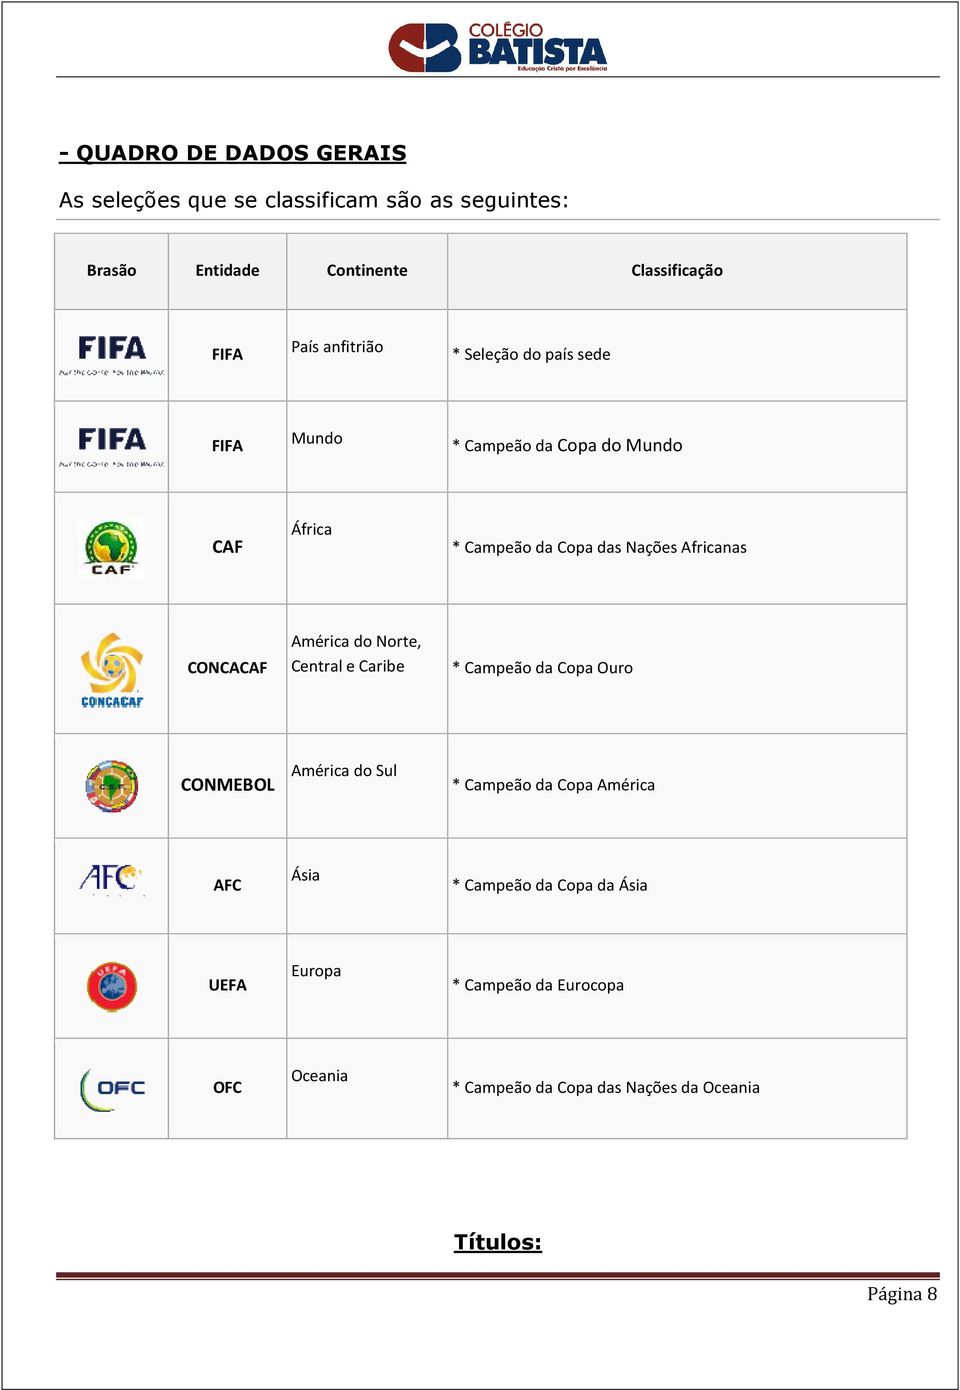 CONCACAF América do Norte, Central e Caribe * Campeão da Copa Ouro CONMEBOL América do Sul * Campeão da Copa América AFC Ásia